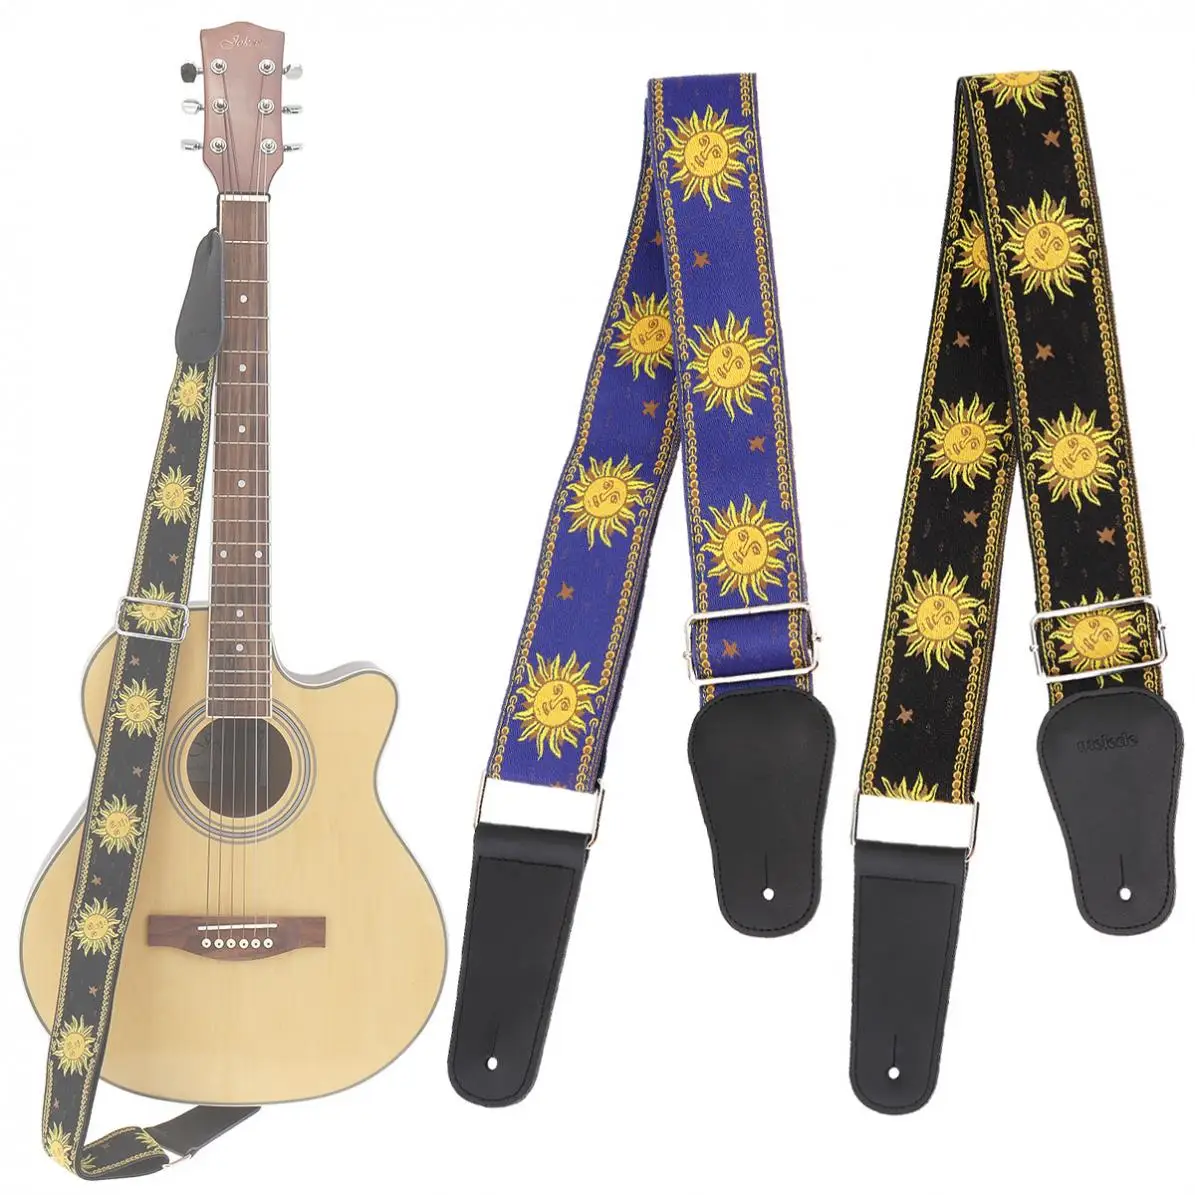 Ayarlanabilir 110-168cm uzunluk Gitar Askısı Çift Kumaş Güneş Çiçek Desen Hakiki deri kemer Gitarist Enstrüman Parçaları Görüntü  0